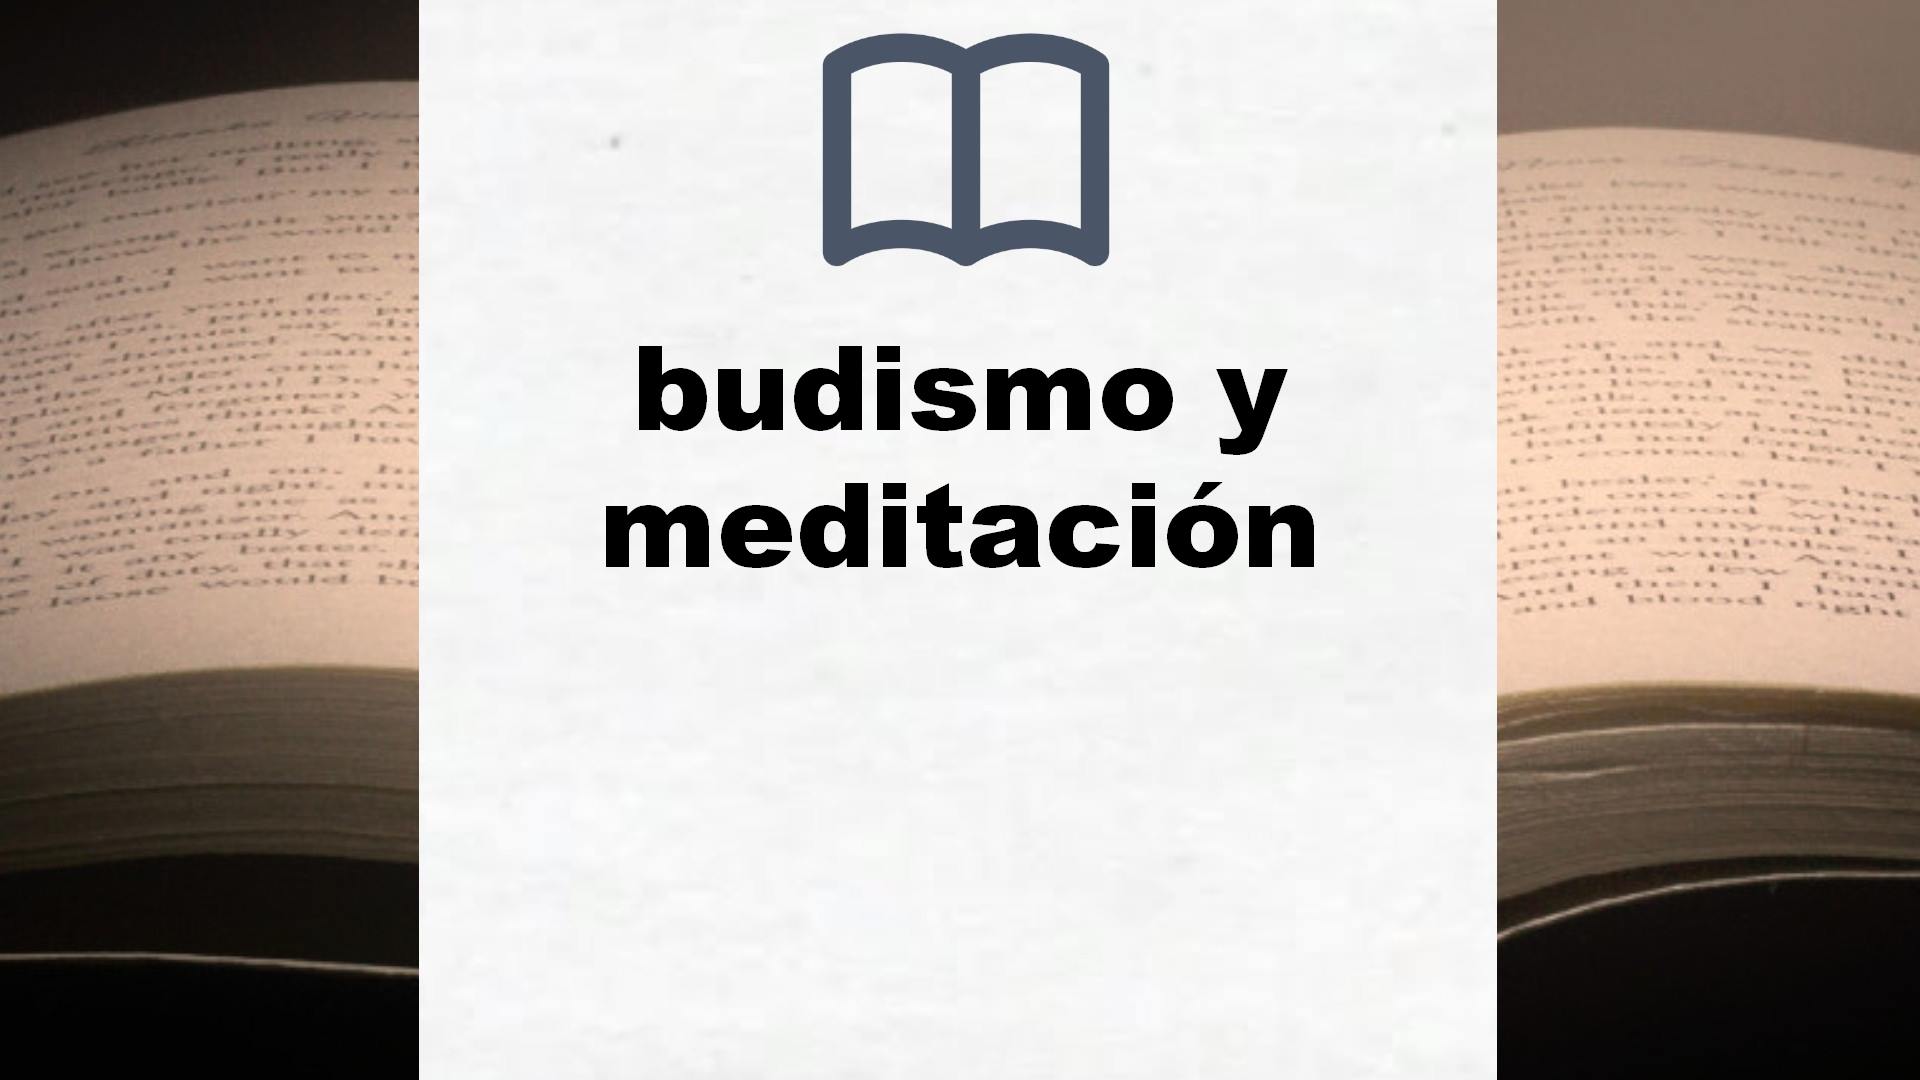 Libros sobre budismo y meditación